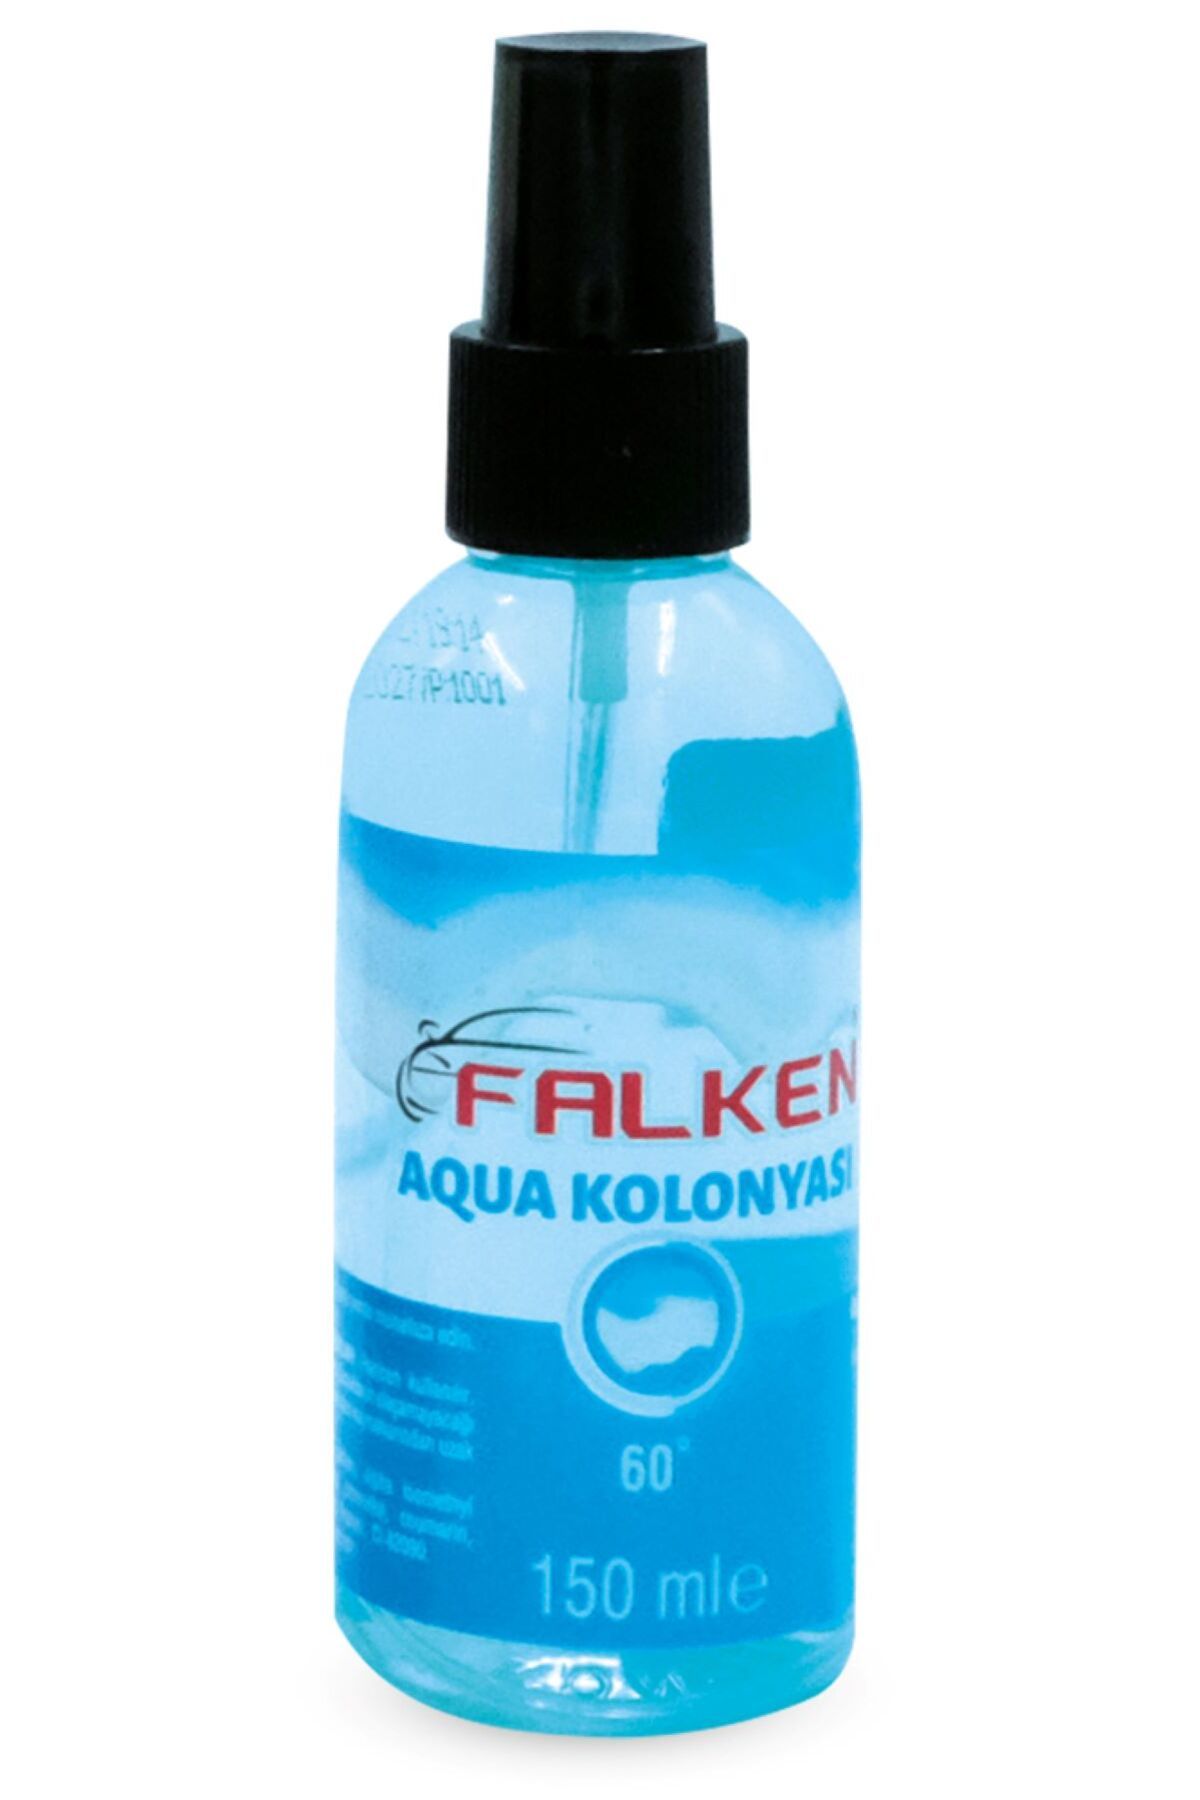 Falken Aqua Kolonya